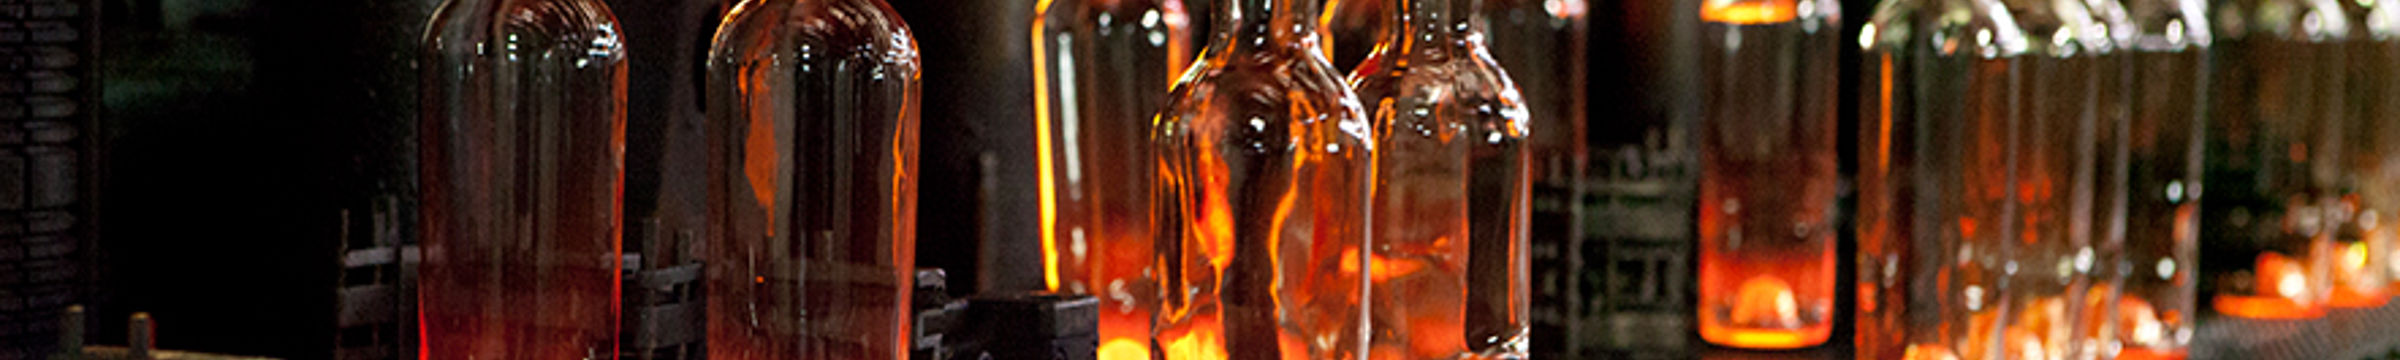 Botellas en planta de cristales con uso energía renovable Statkraft